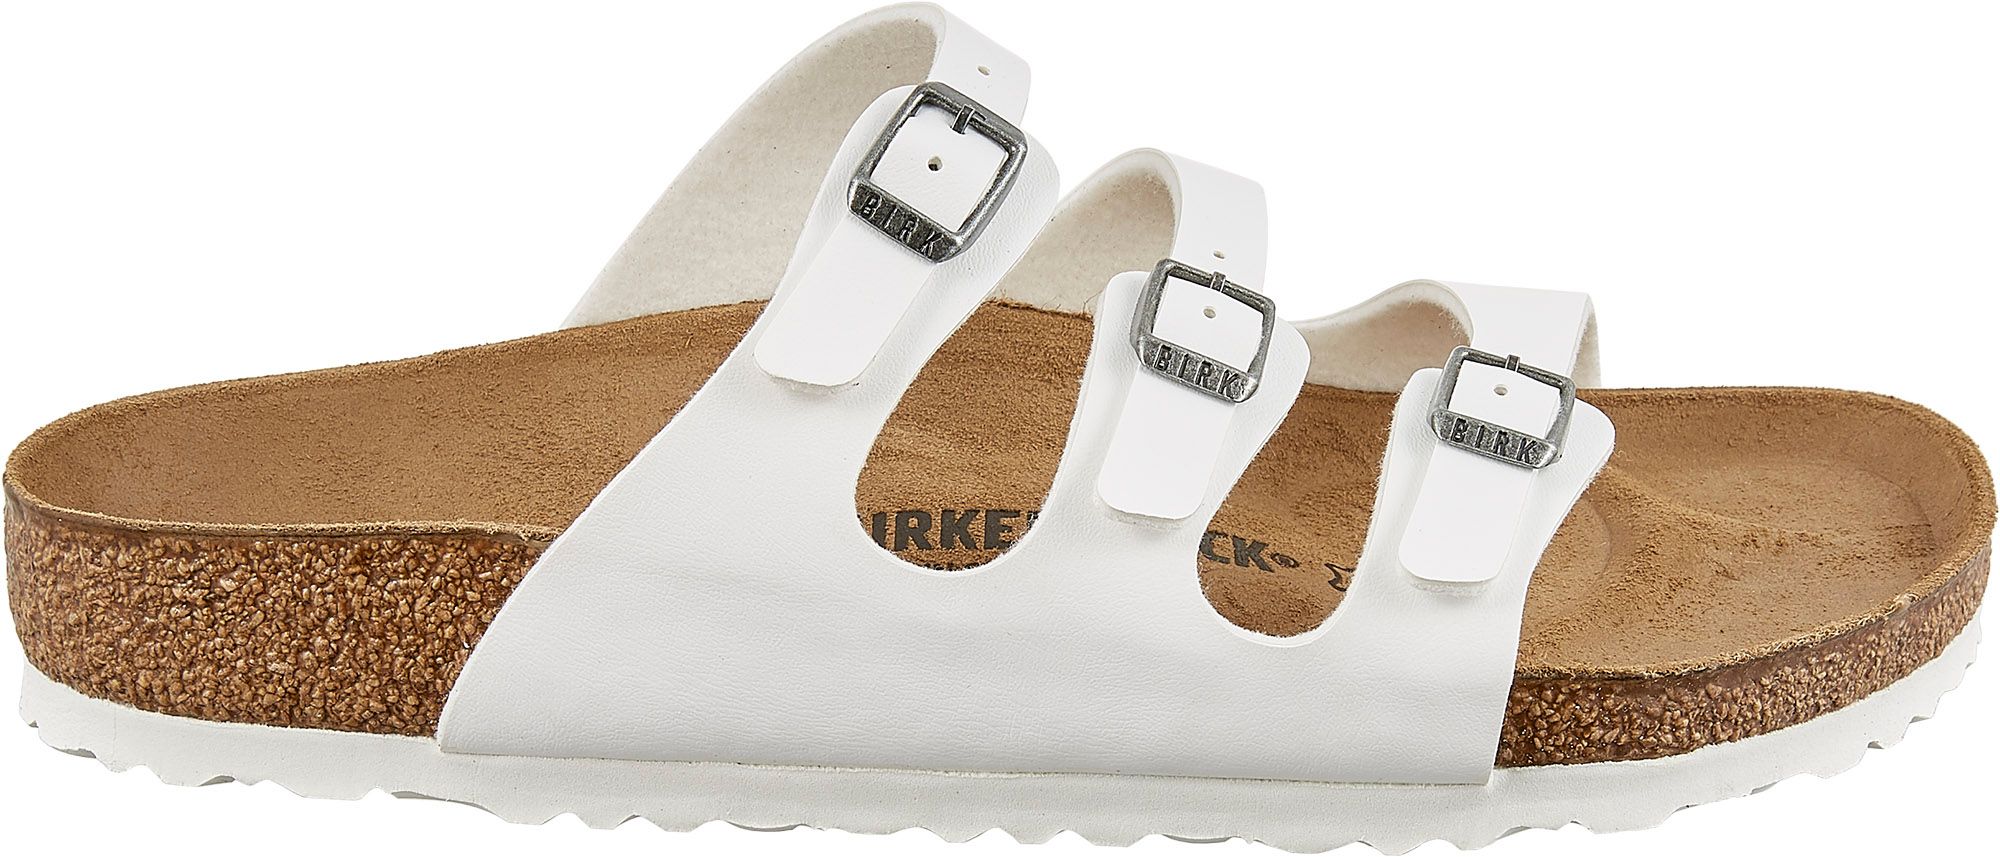 Birkenstock Sandals for Sale | Free 